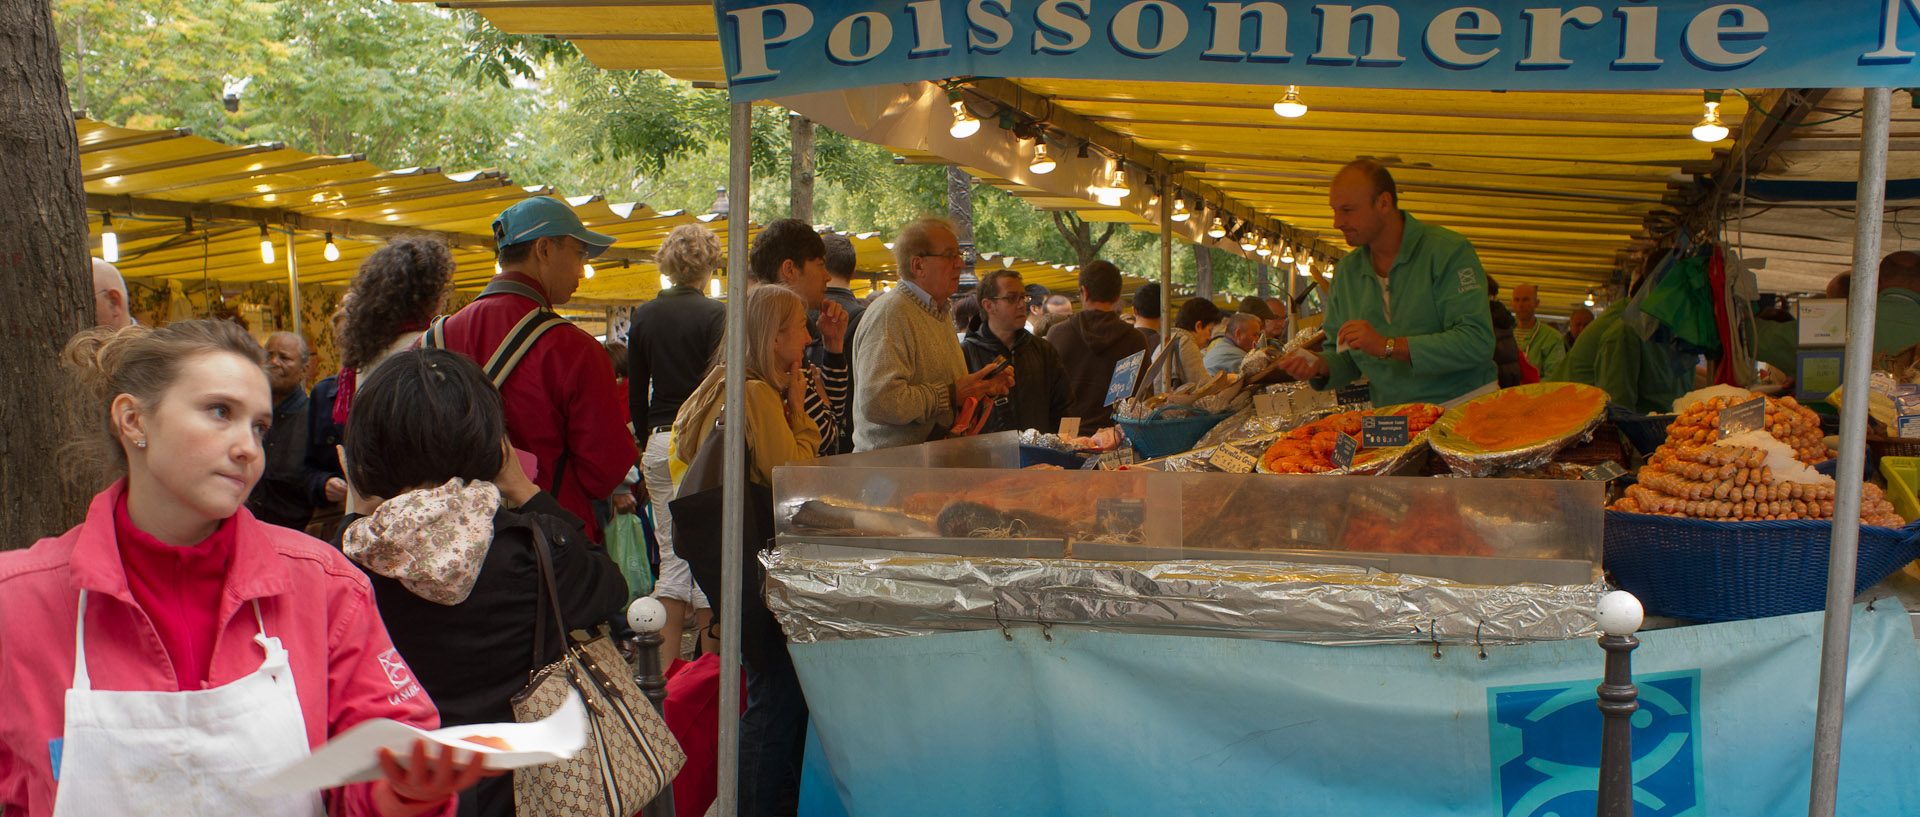 Le marché, boulevard Richard-Lenoir, à Paris.